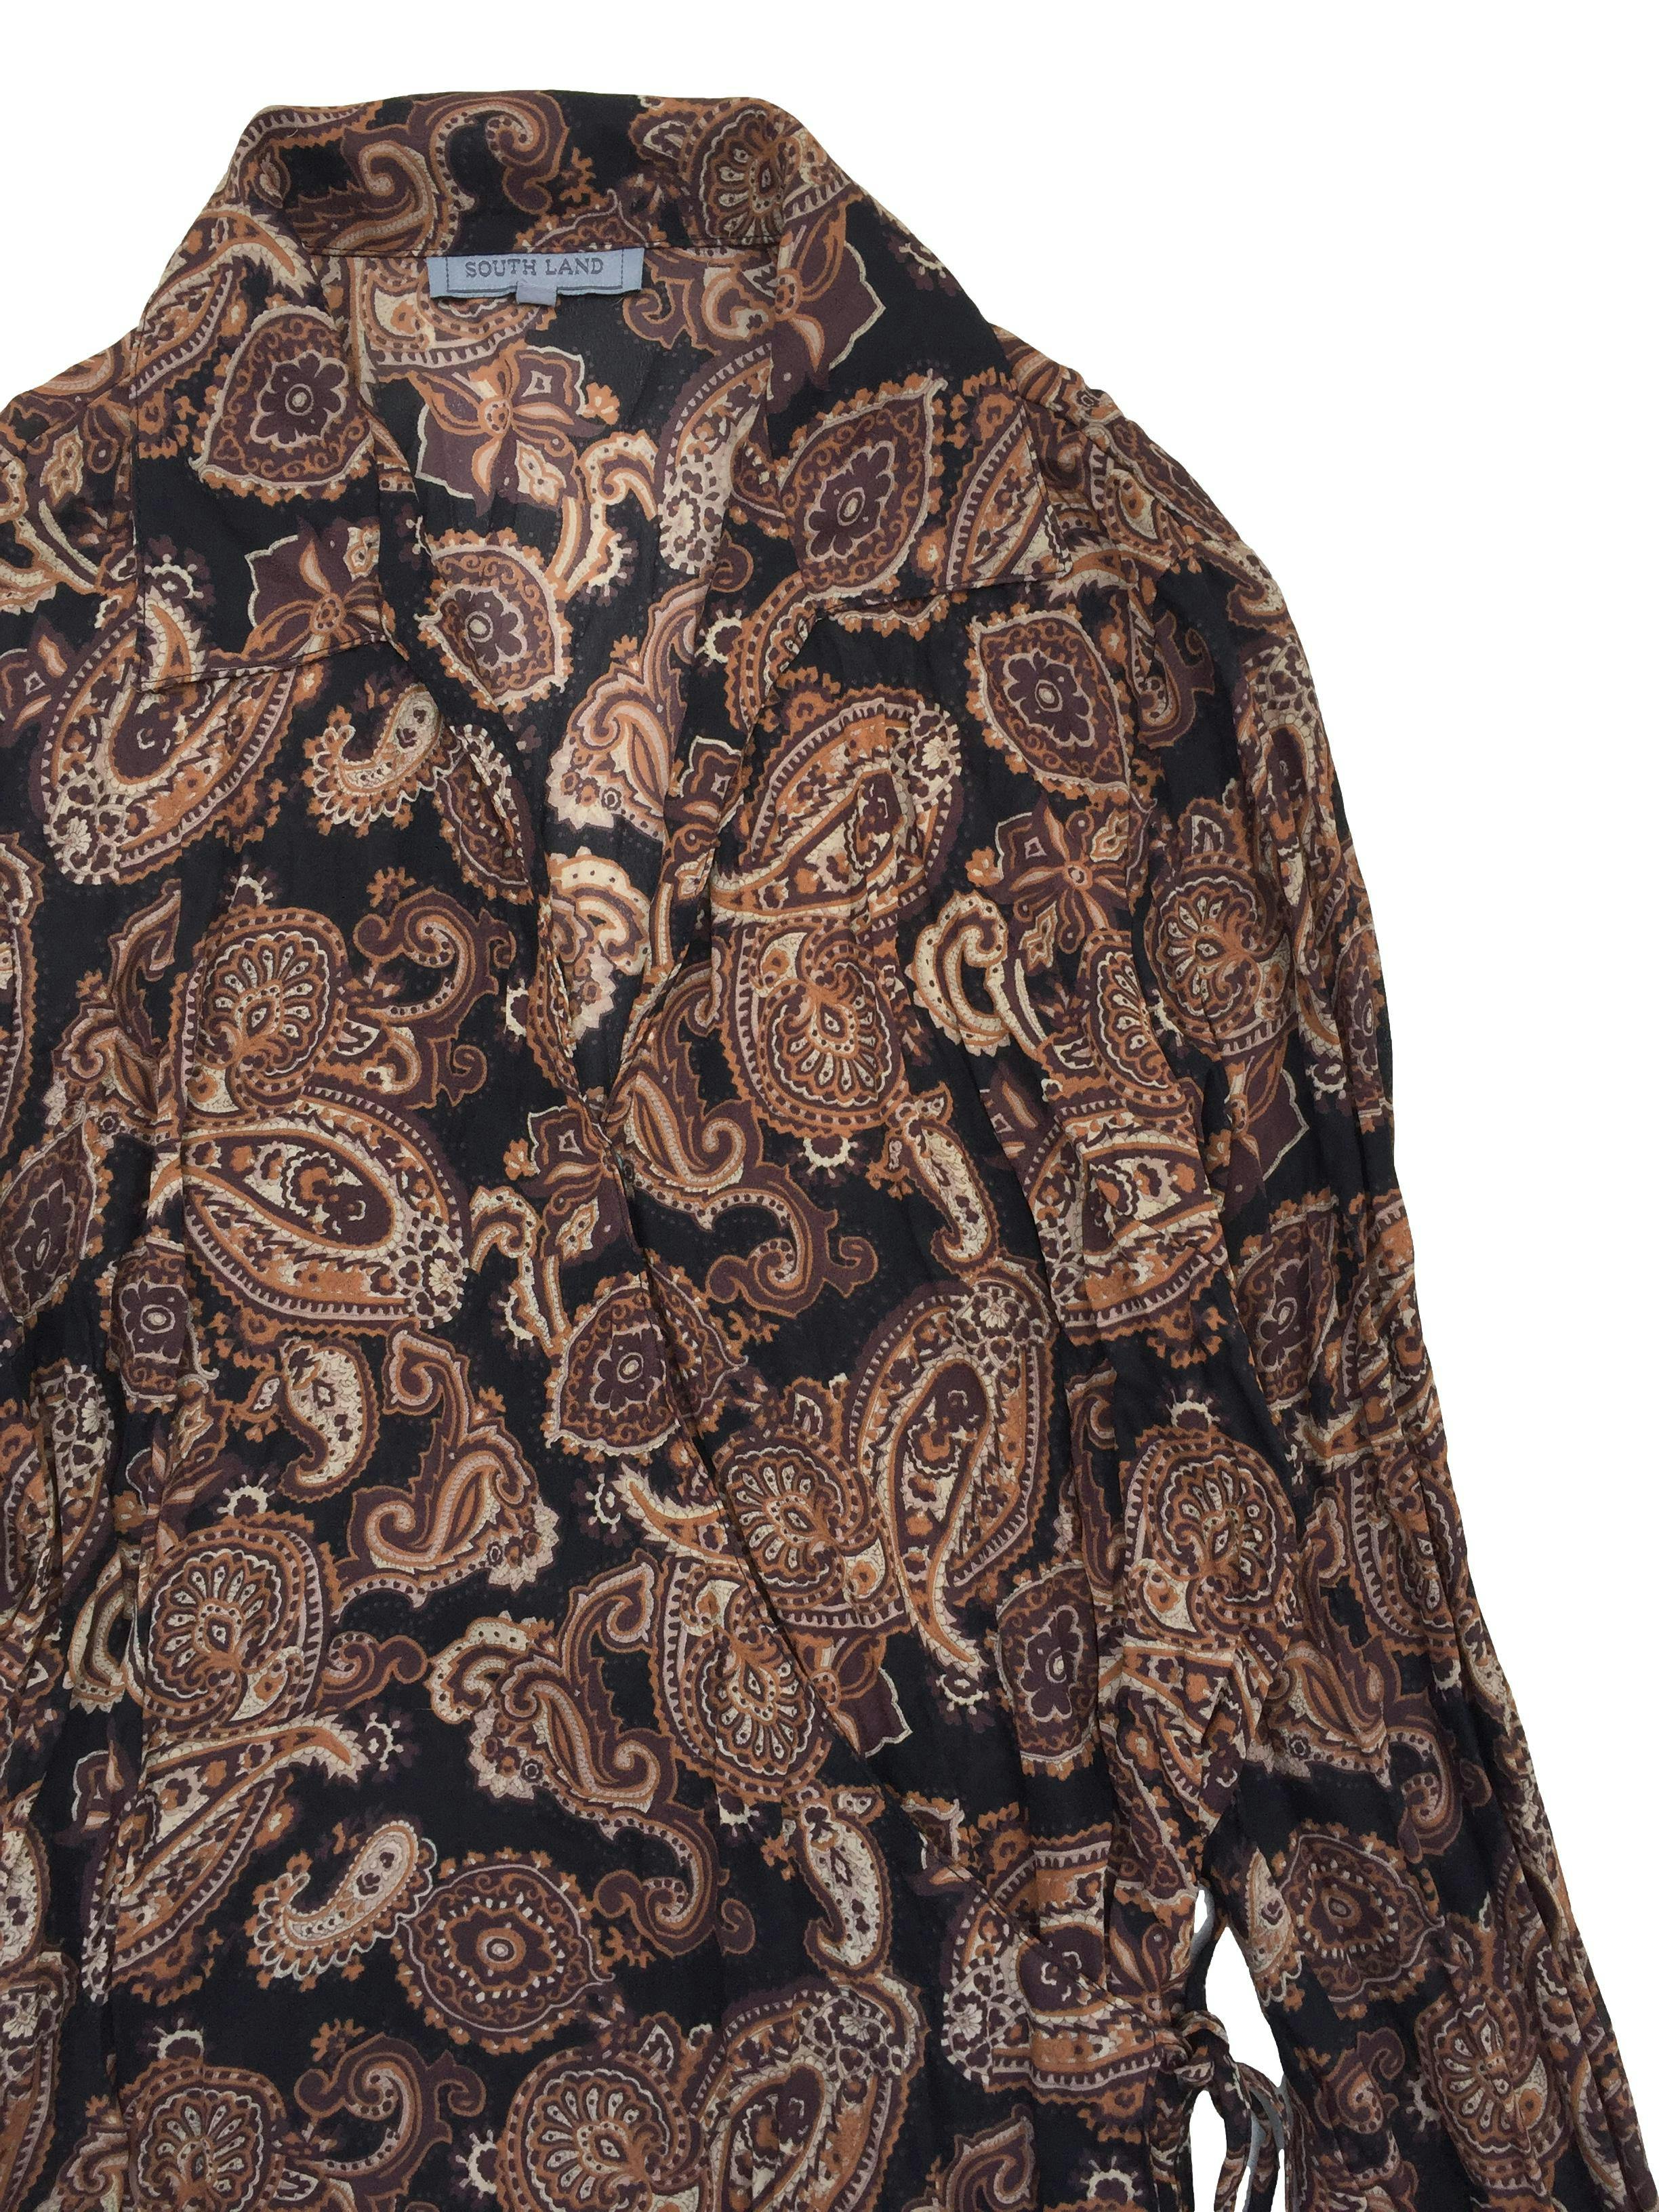 Blusa envolvente de gasa marrón con estampado beige, textura corrugada. Busto 100cm Largo 60cm